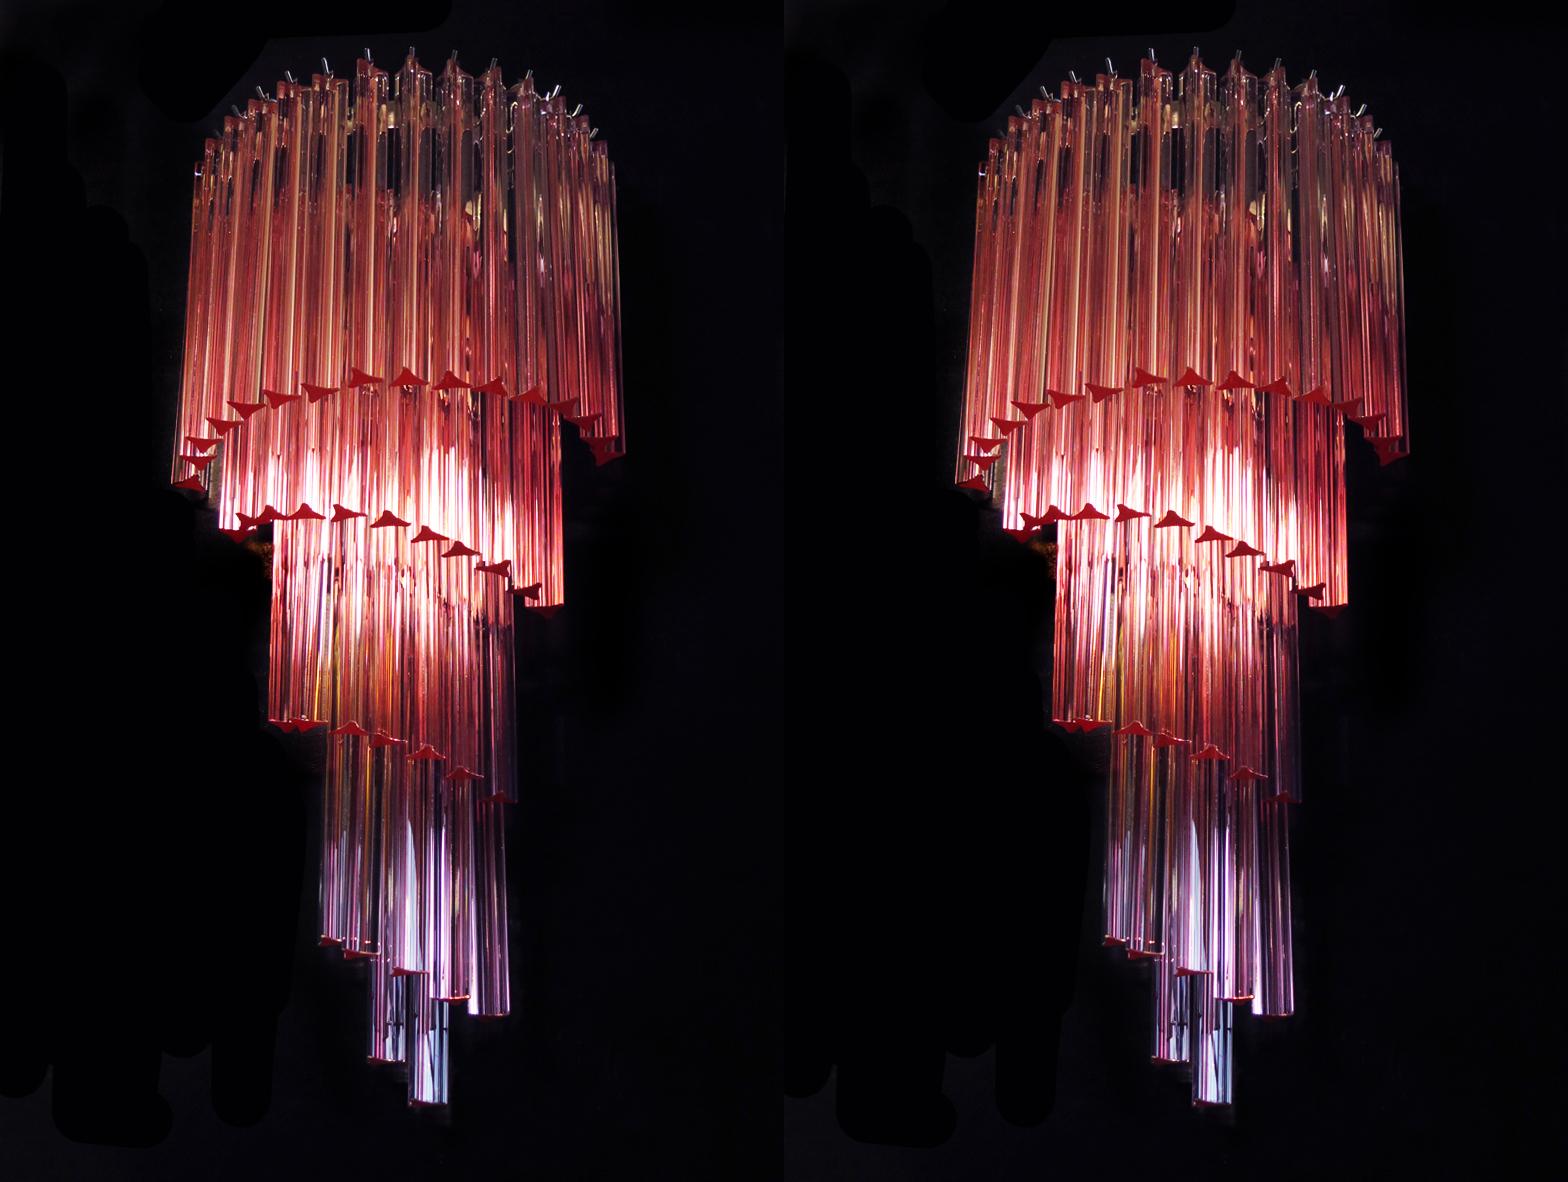 Riesige und fantastische Paar Vintage Murano Wandleuchten von 41 Murano-Kristall Prisma (versuchtri) für jede Anwendung in einem verchromten Metallrahmen gemacht. Die Form dieser Leuchte ist spiralförmig. Die Gläser sind rosa.
Zeitraum: Ende des